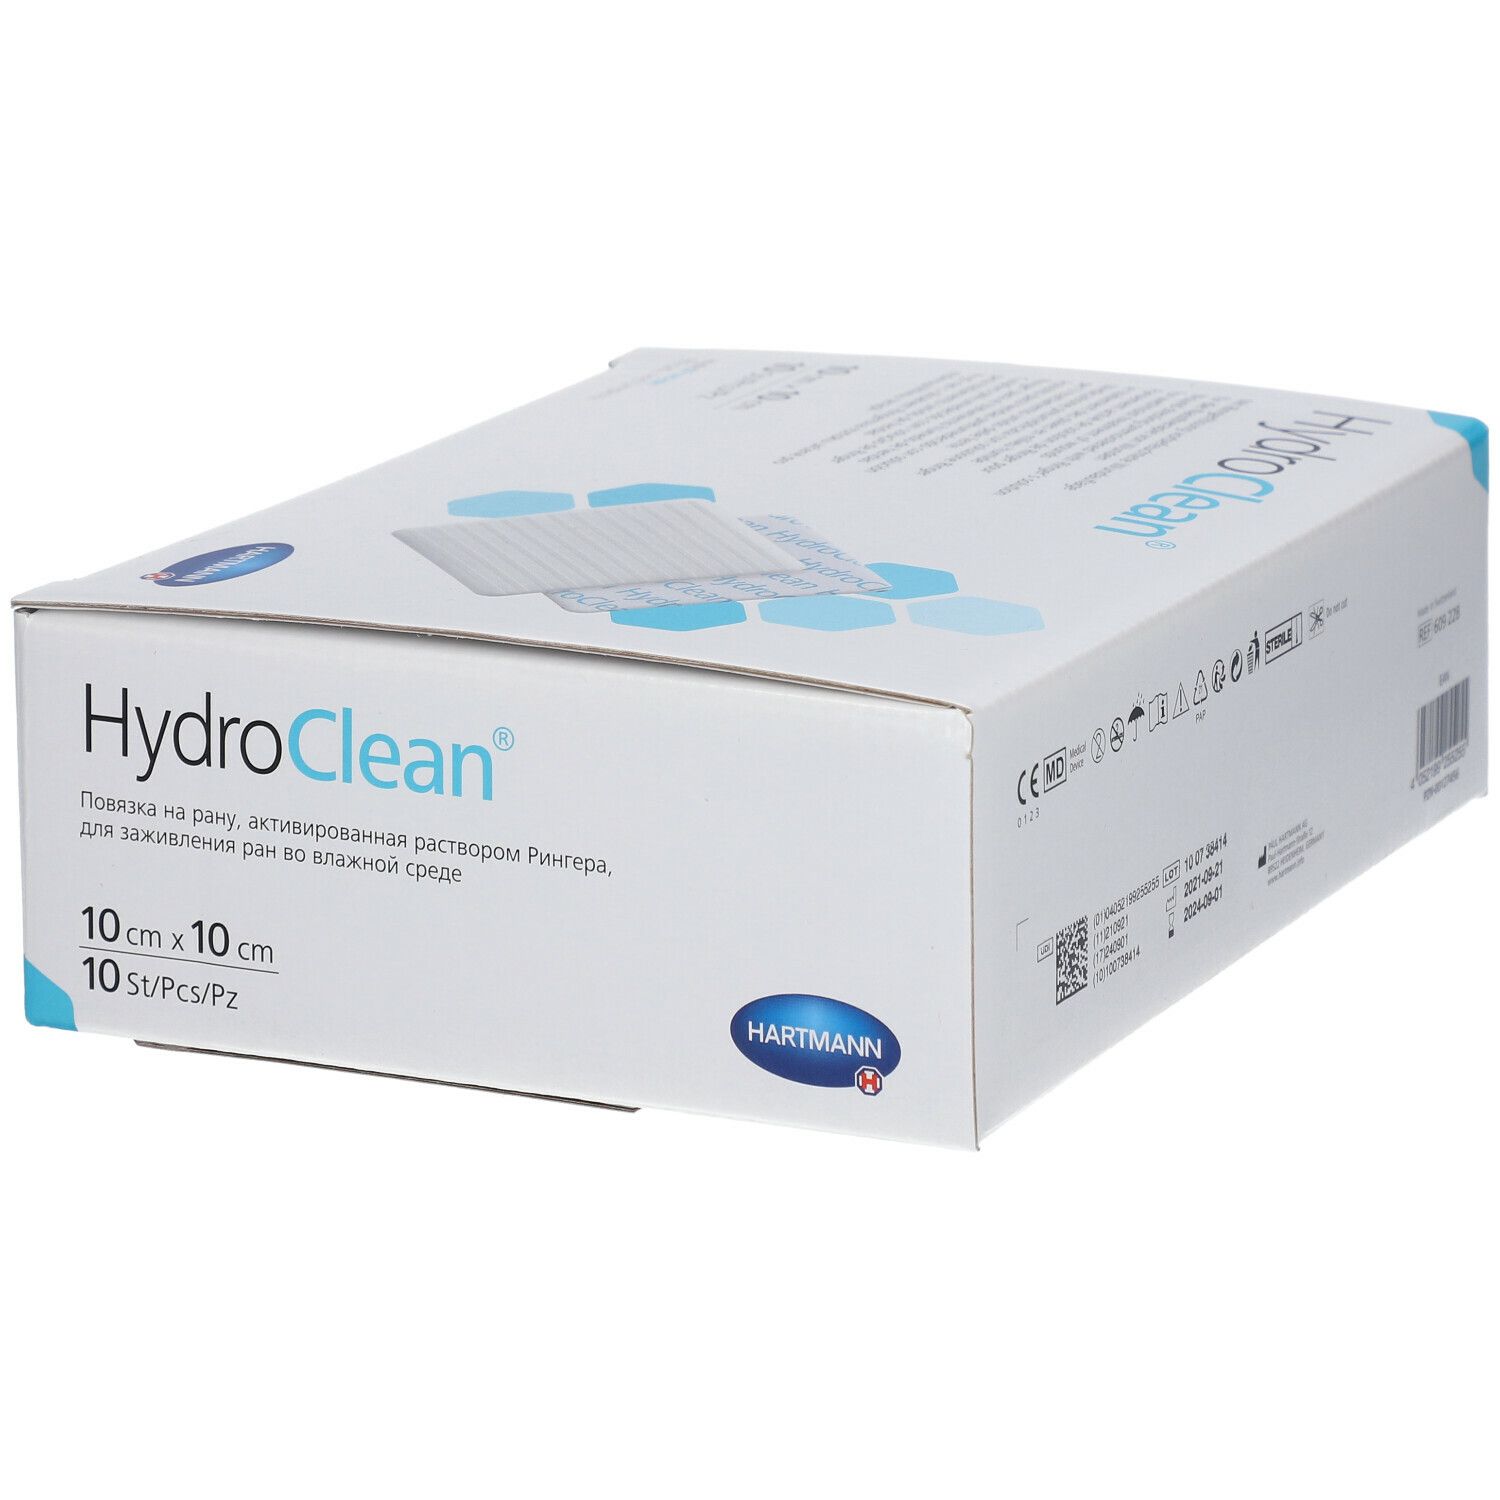 HydroClean® 10 x 10 cm